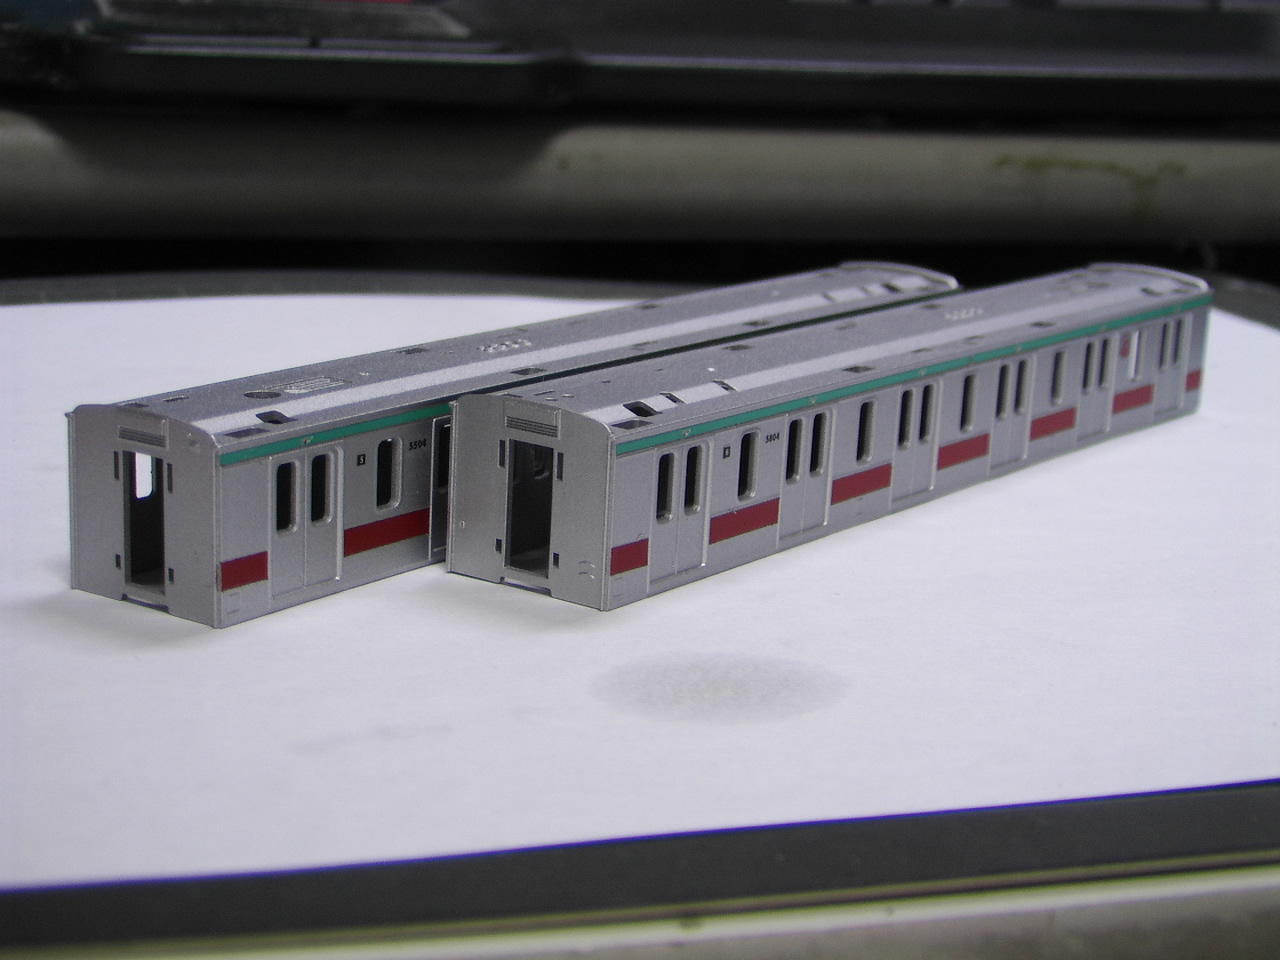 です【Bトレ】東急5000系6ドア車組込\u0026東武8000系復刻塗装 - 鉄道模型